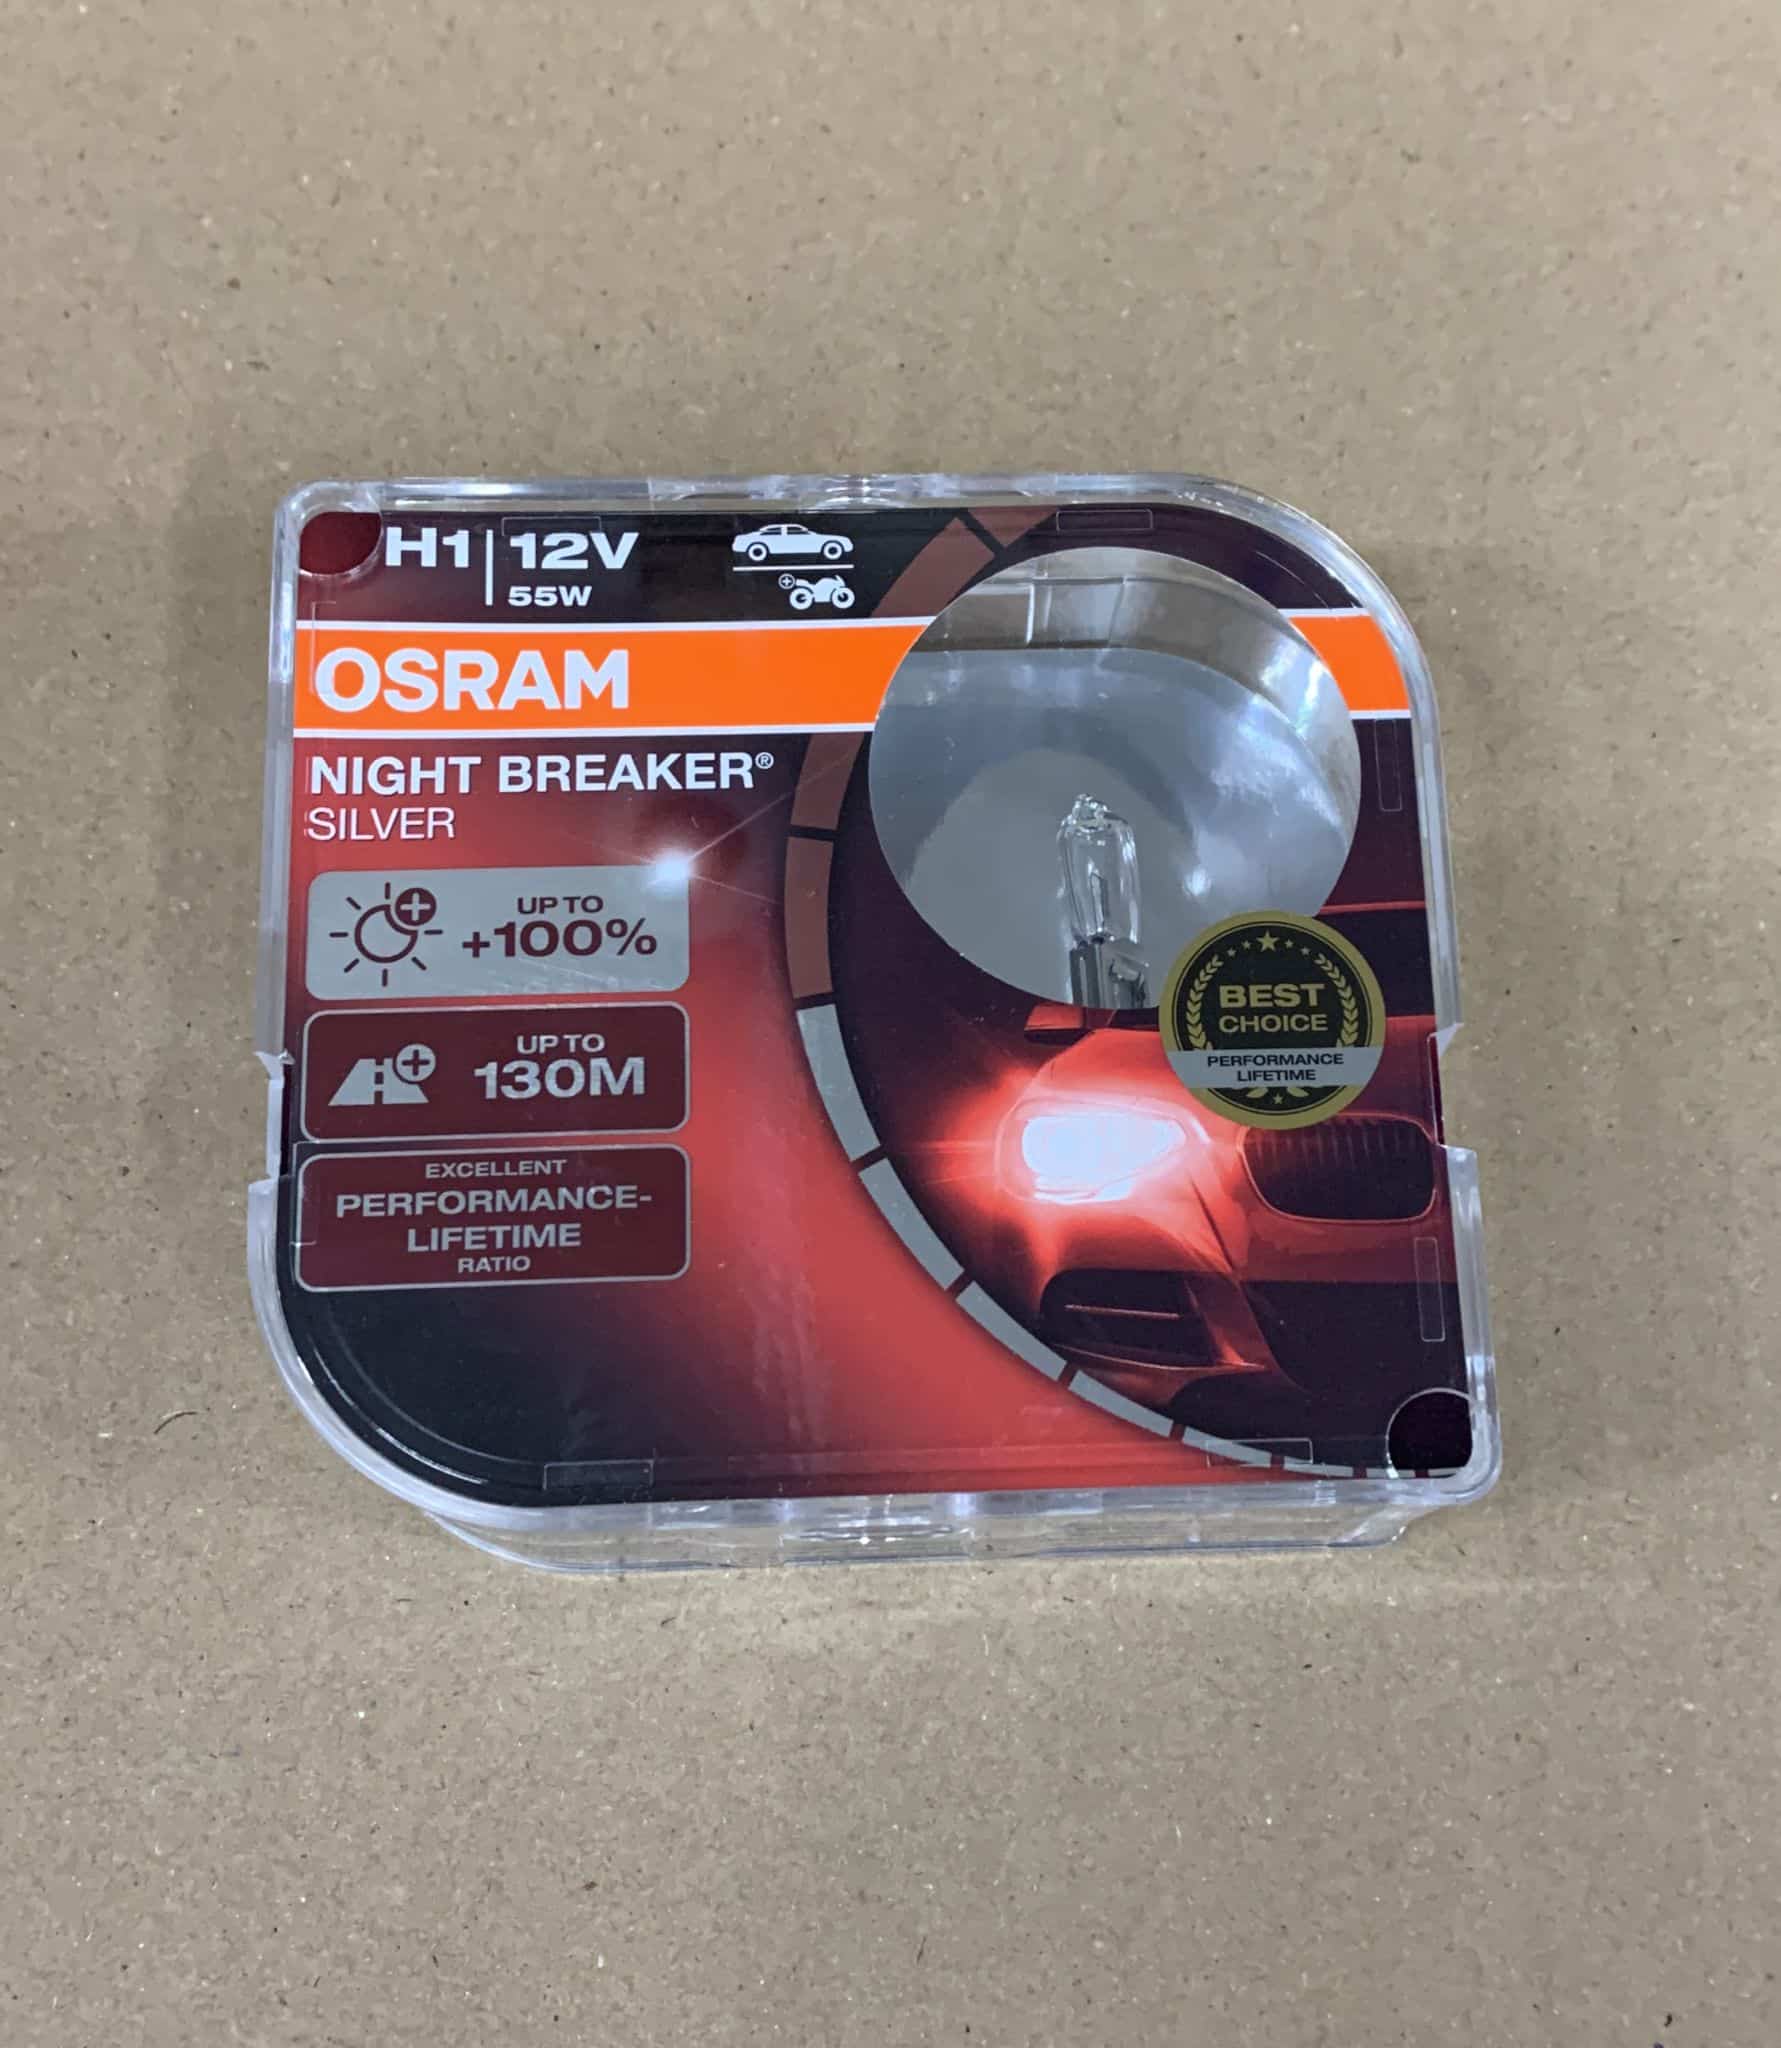 OSRAM NIGHT BREAKER SILVER H1, +100% more brightness, halogen headlamp-2252